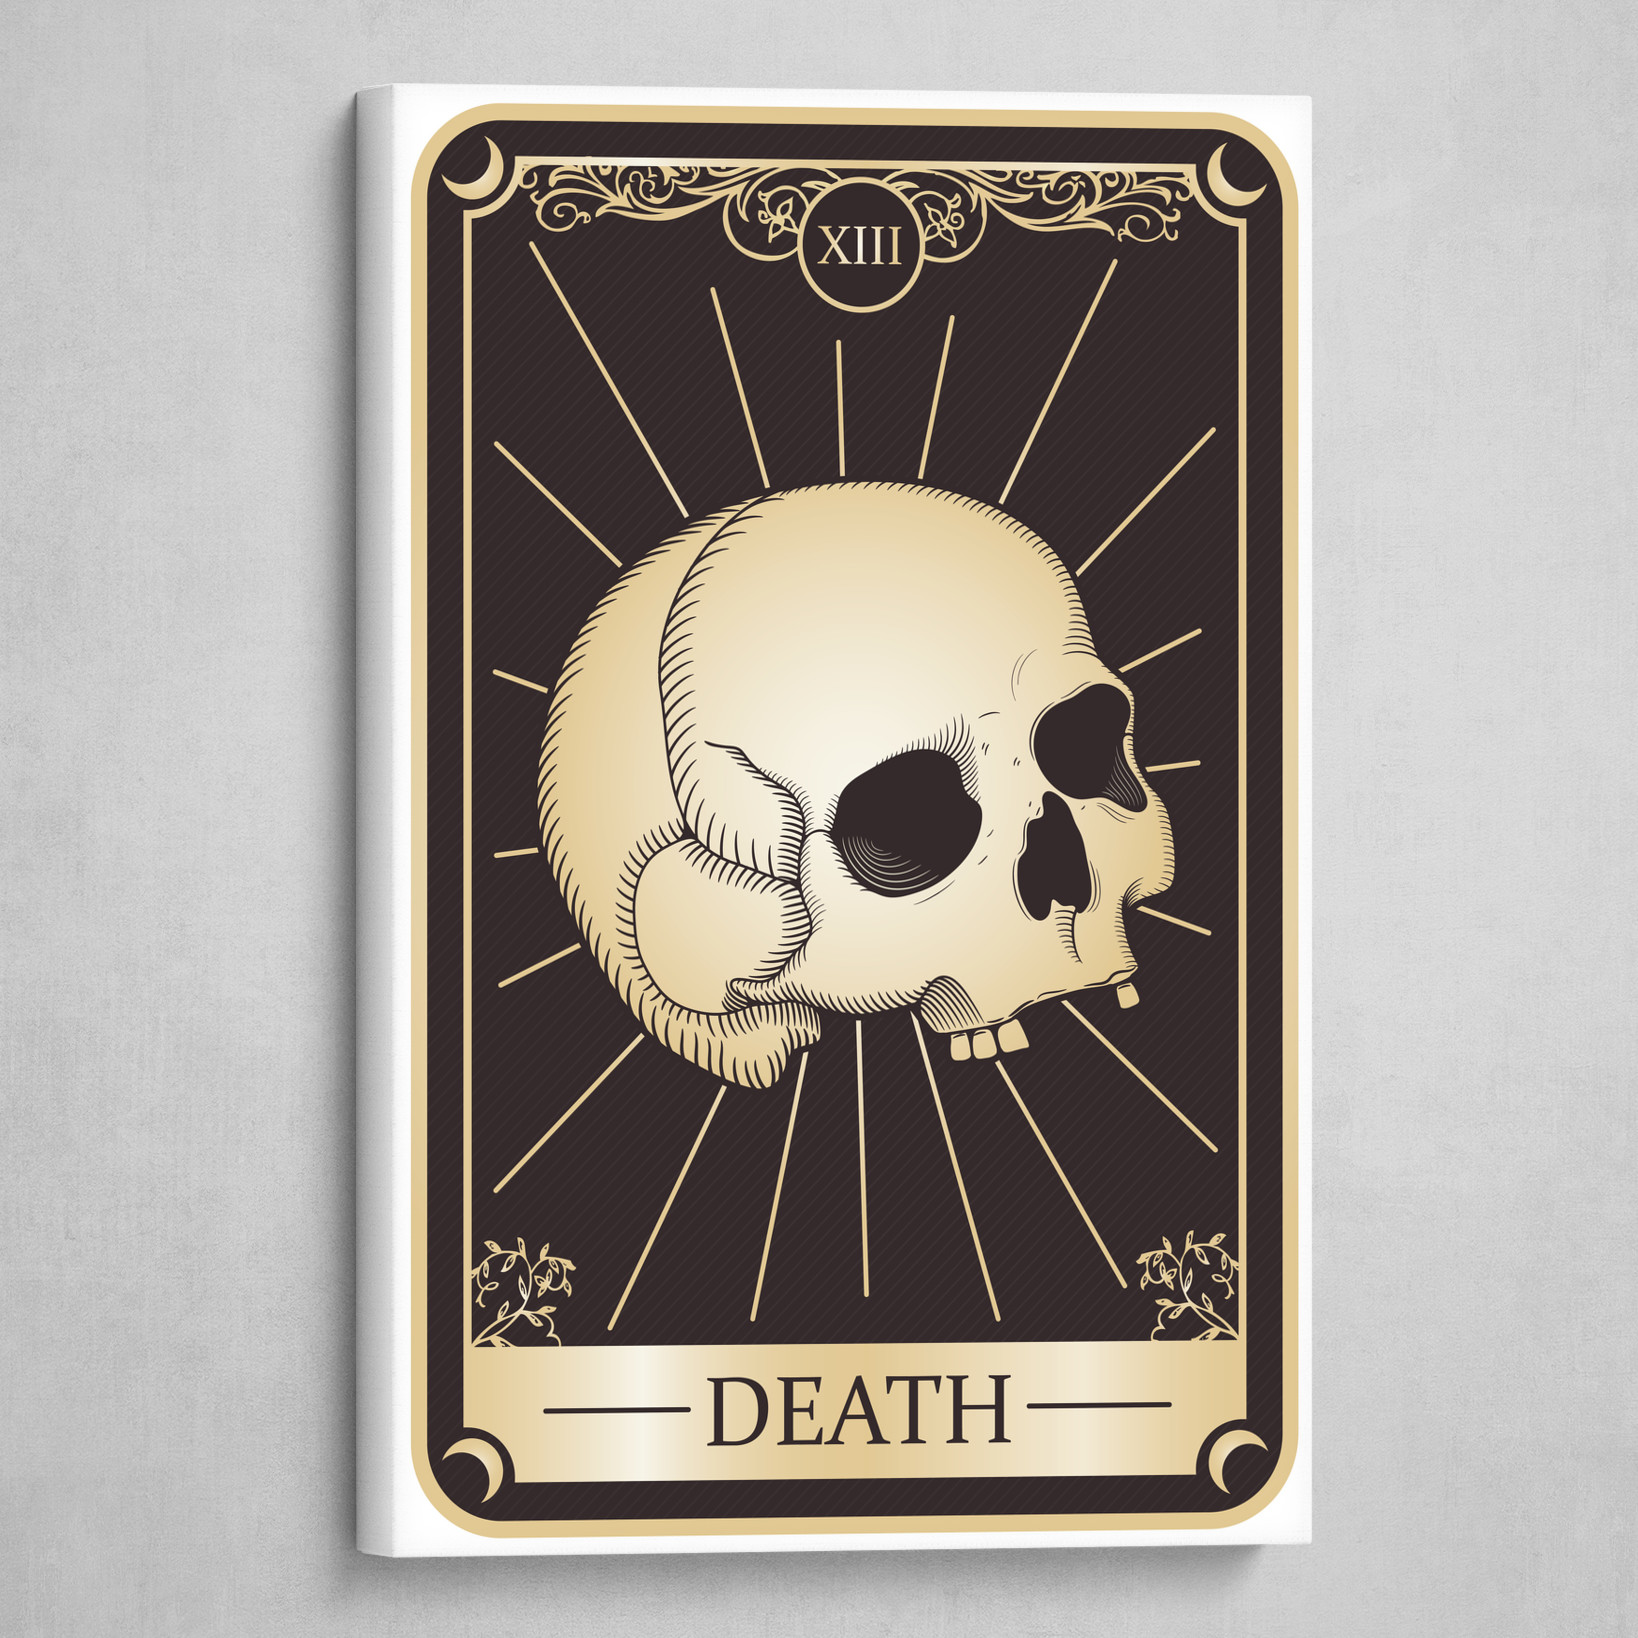 Tarot Card XIII - Death